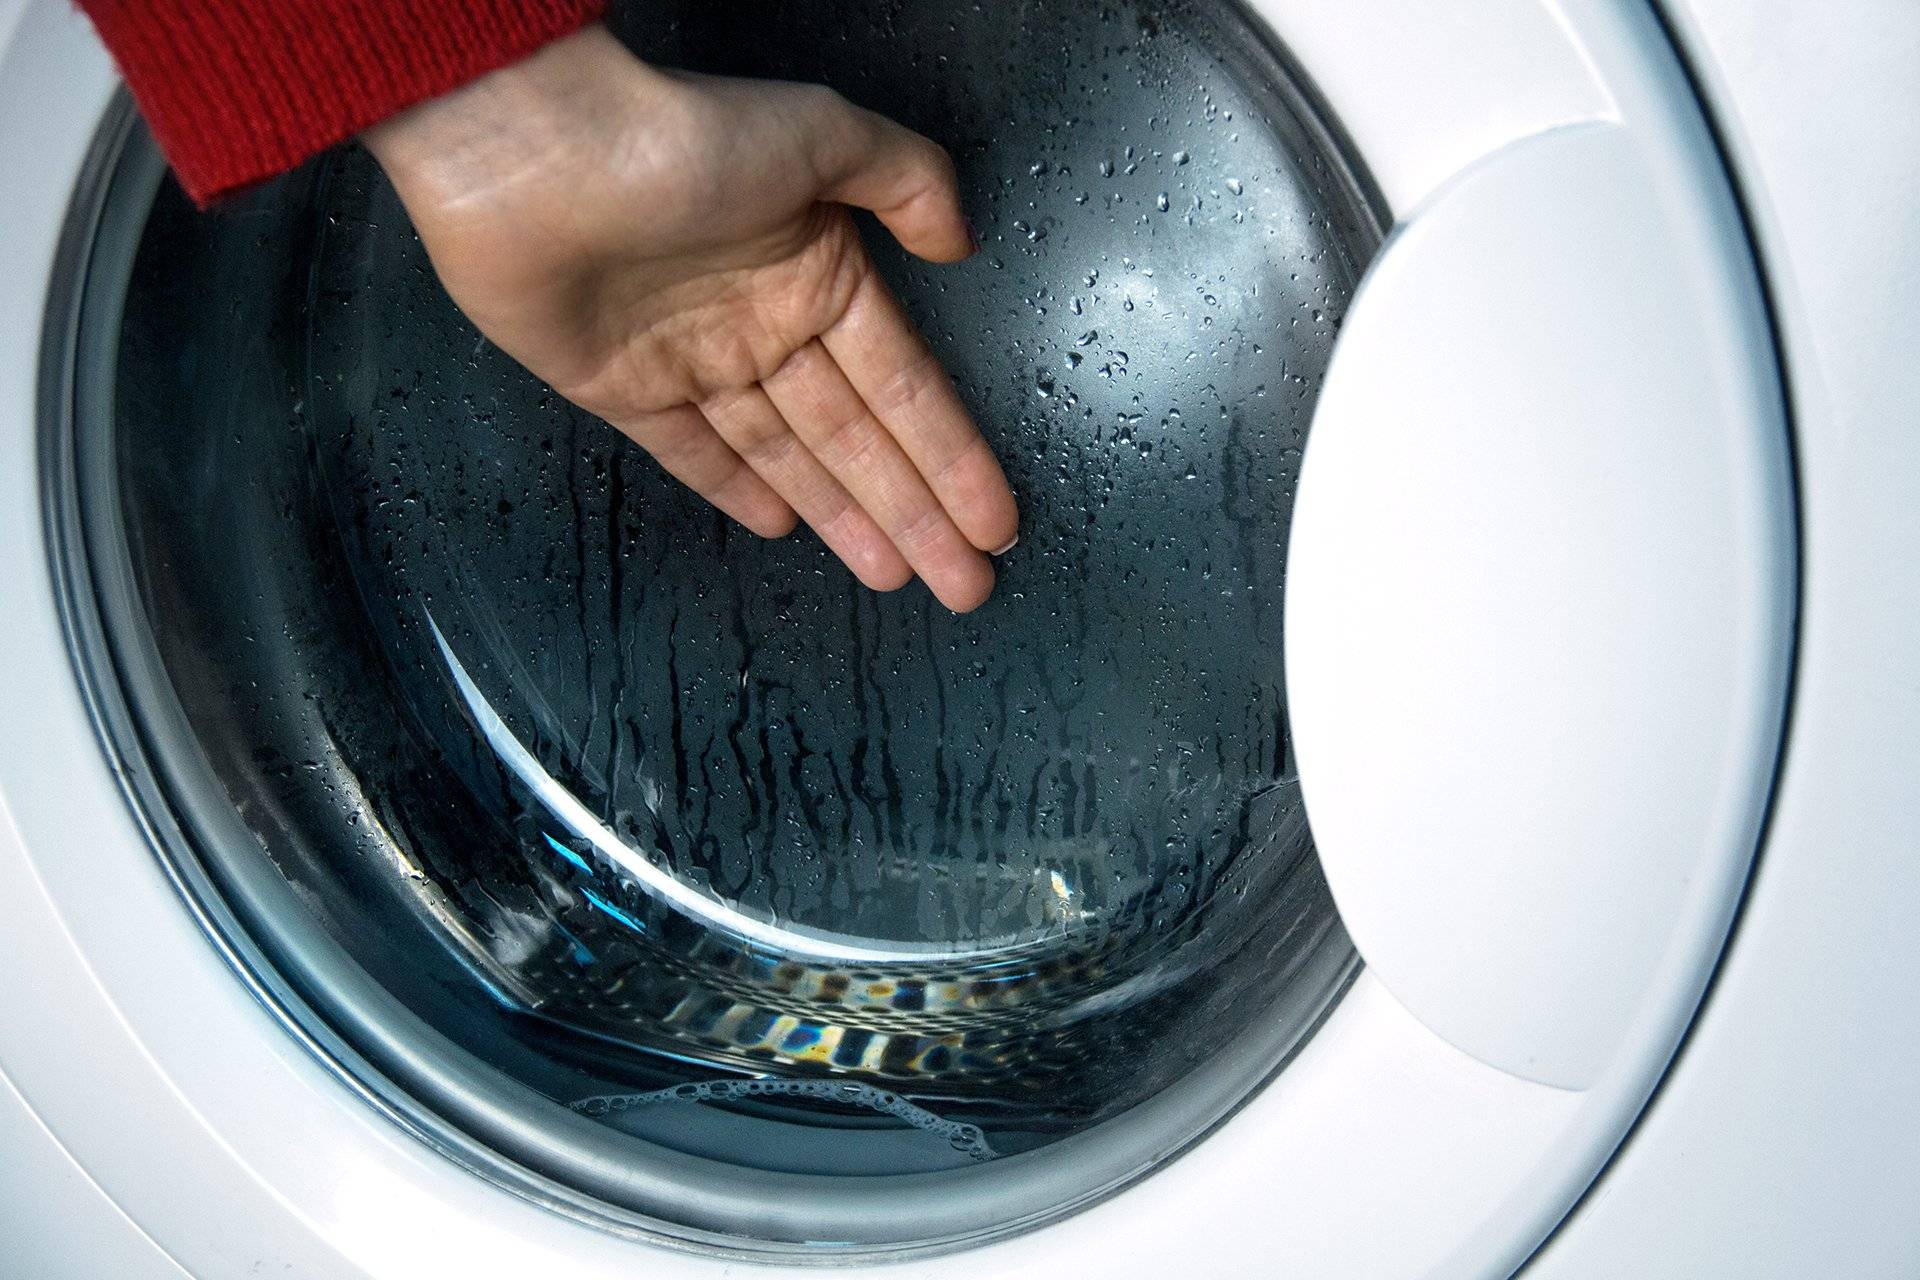 Почему не нагревается вода в стиральной машине?